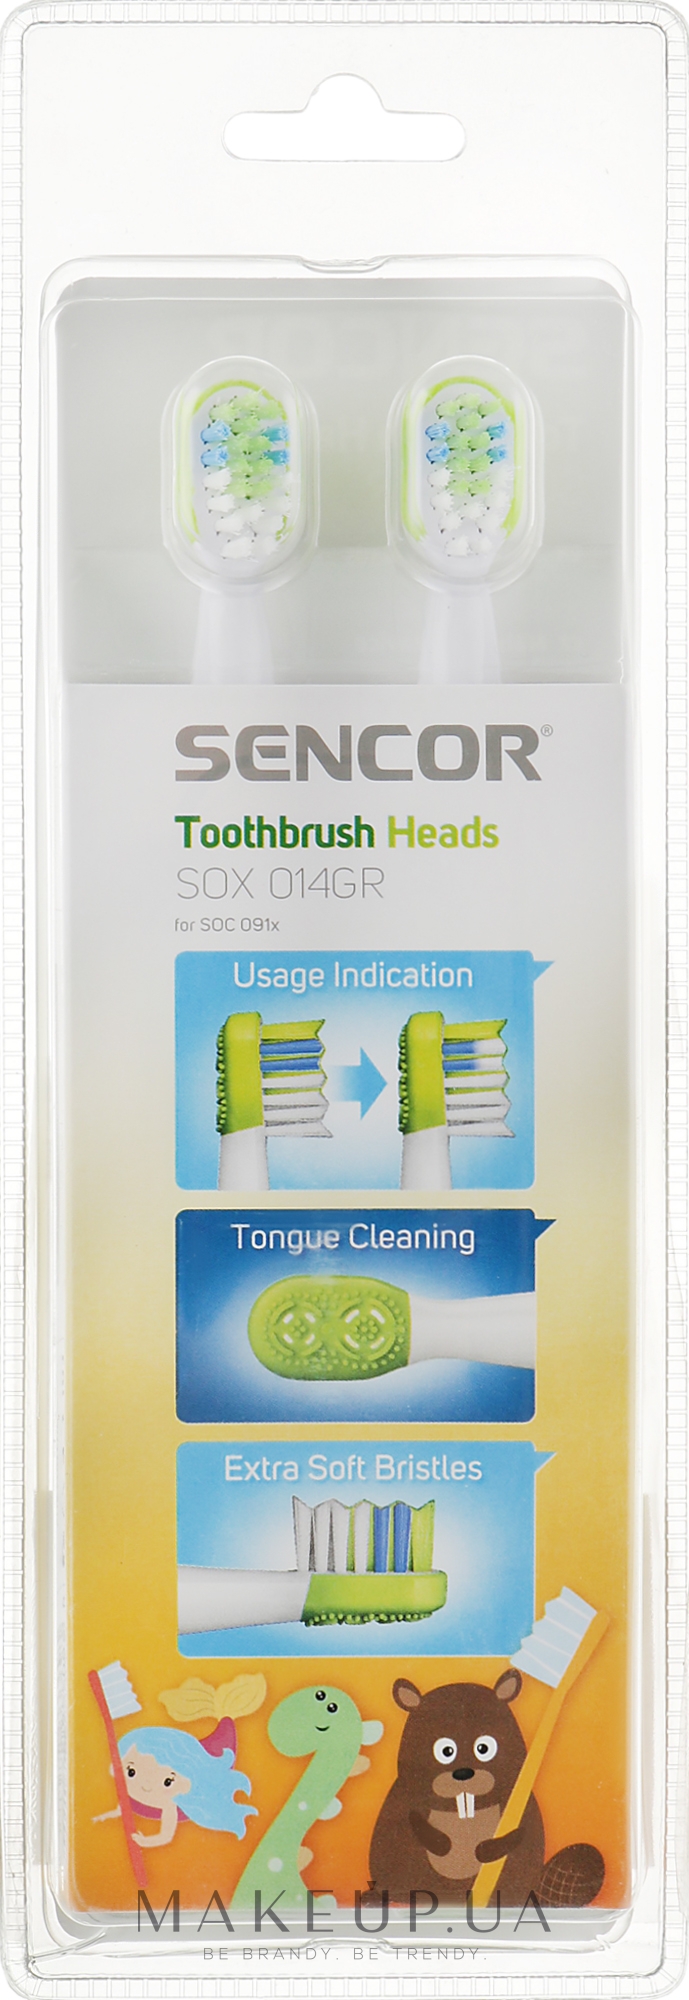 Насадка для детской электрической зубной щетки SOX014GR, 6-12 лет, 2 шт - Sencor — фото 2шт